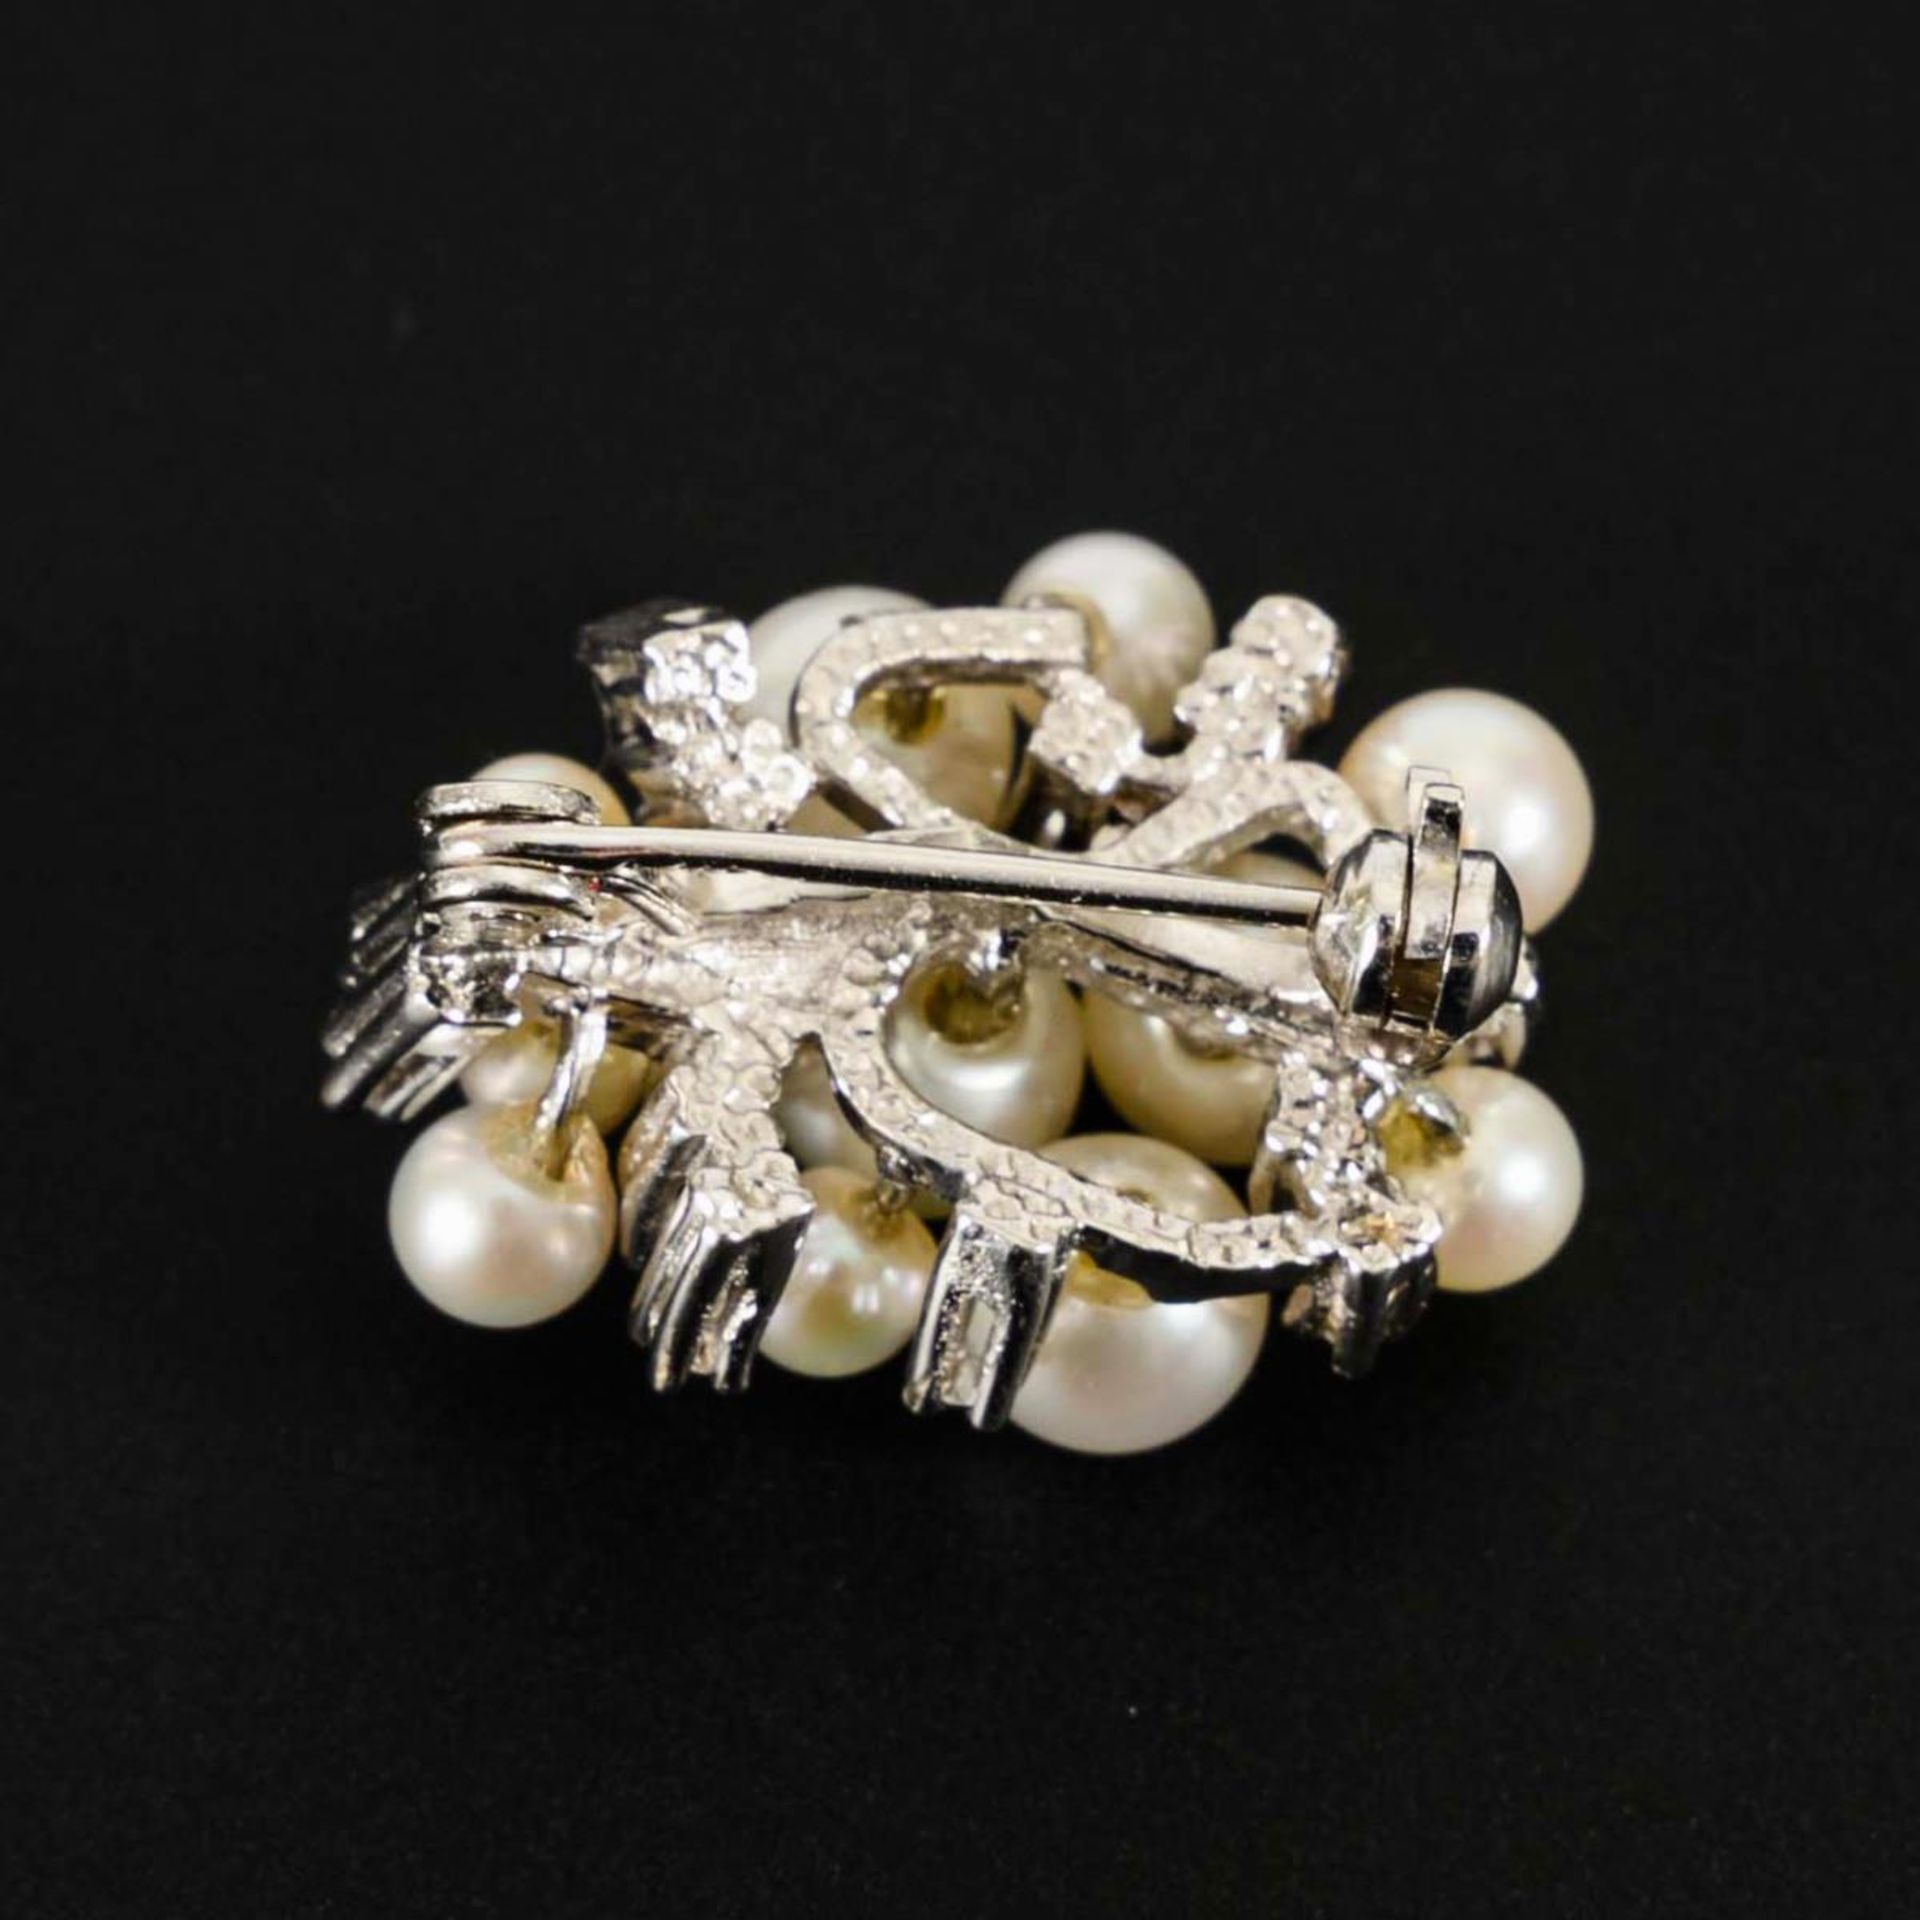 Perlenkettenverkürzer mit Akoyazuchtperlen und Diamanten. - Image 2 of 2